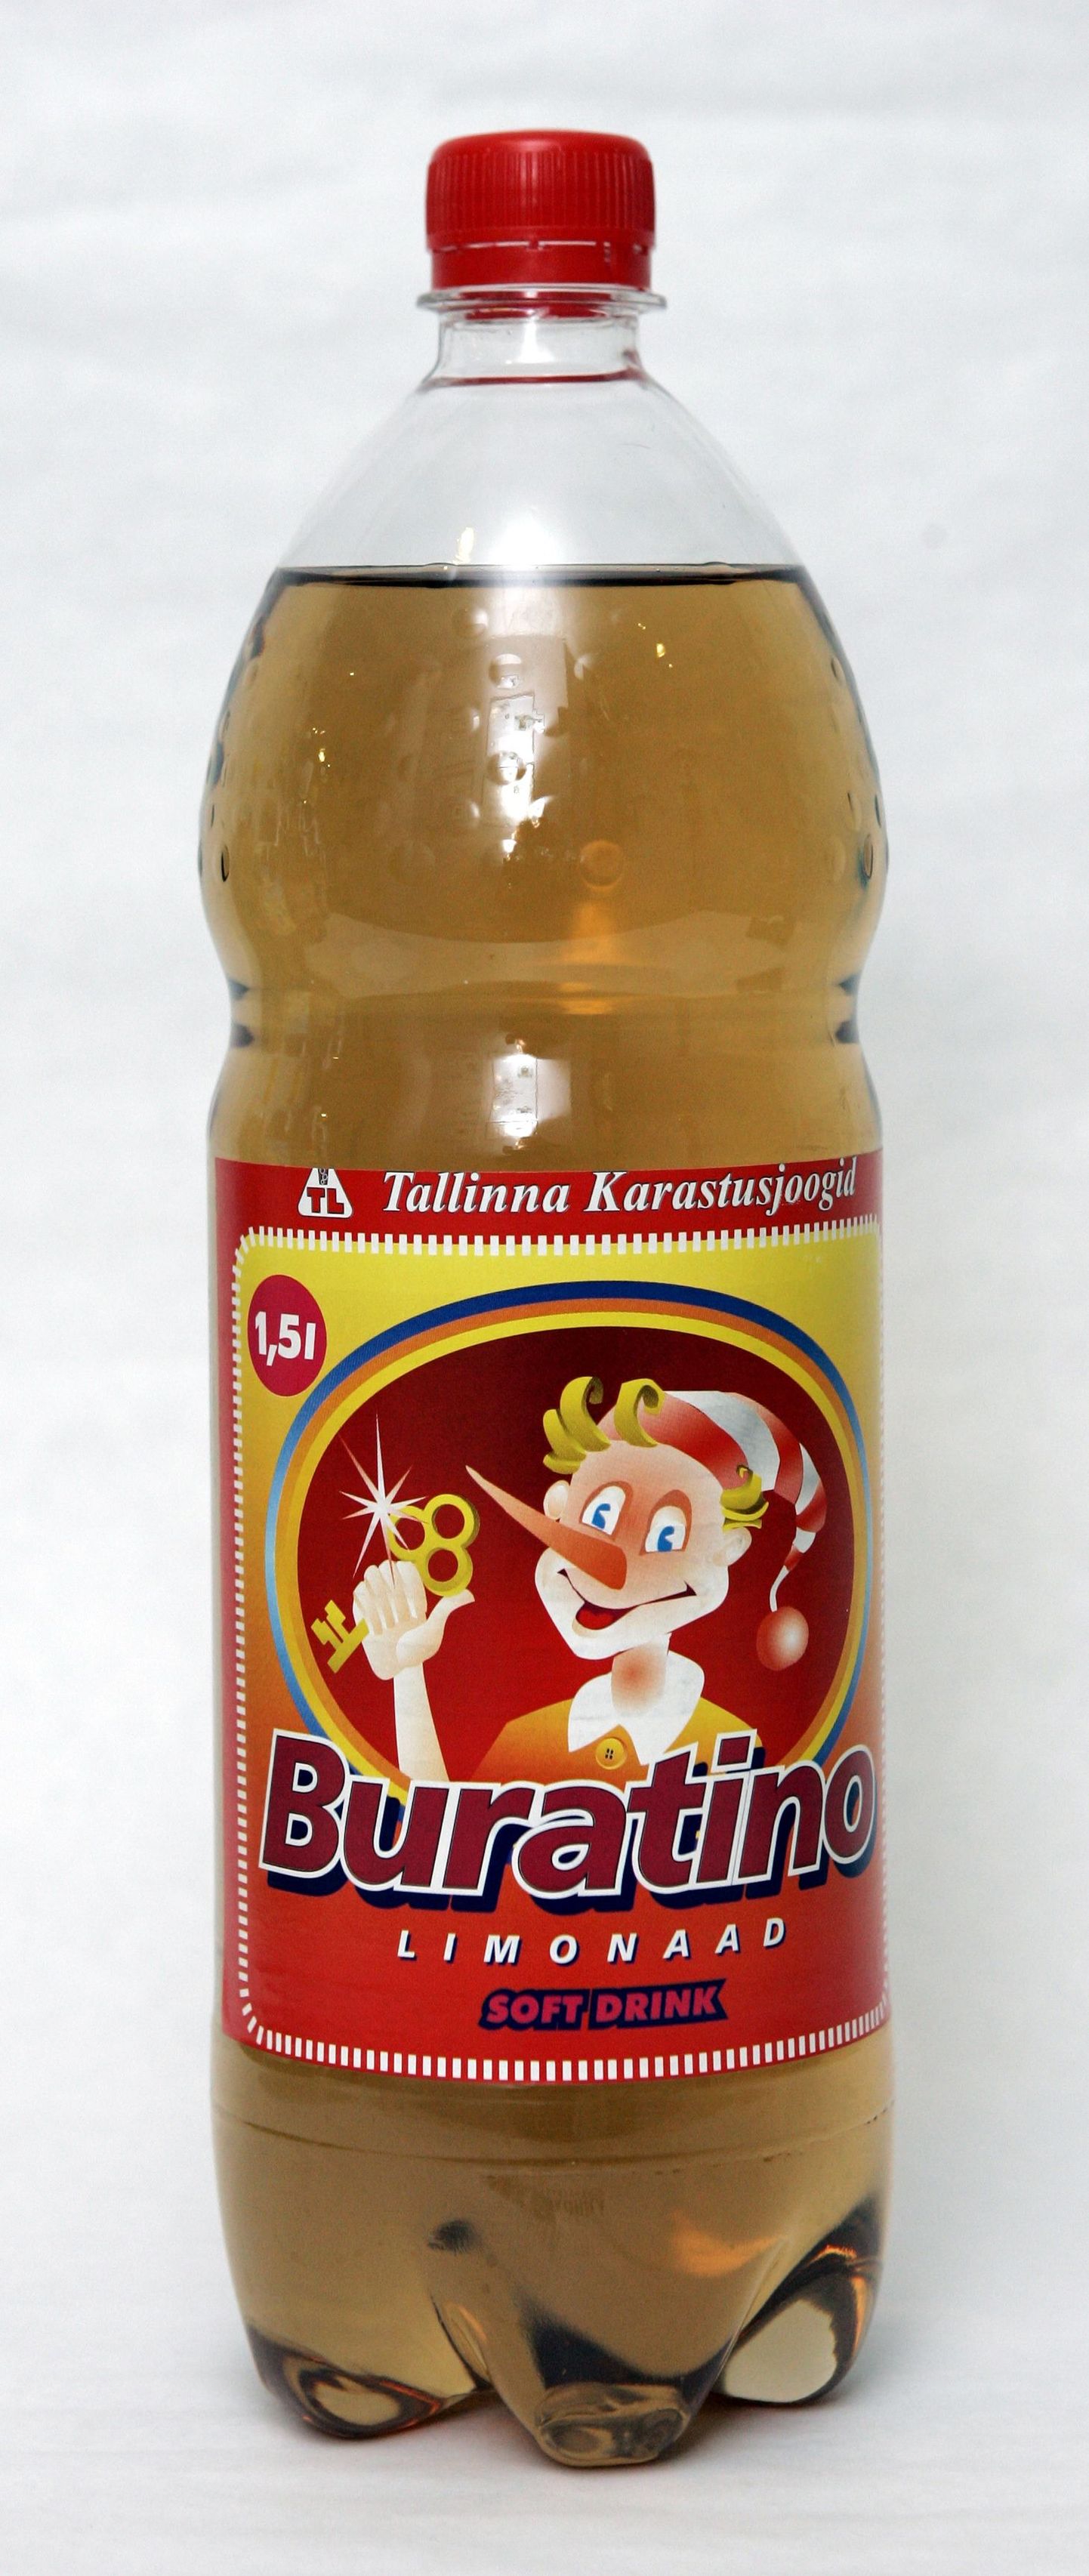 Jõhvis tehti ka Buratino limonaadi.